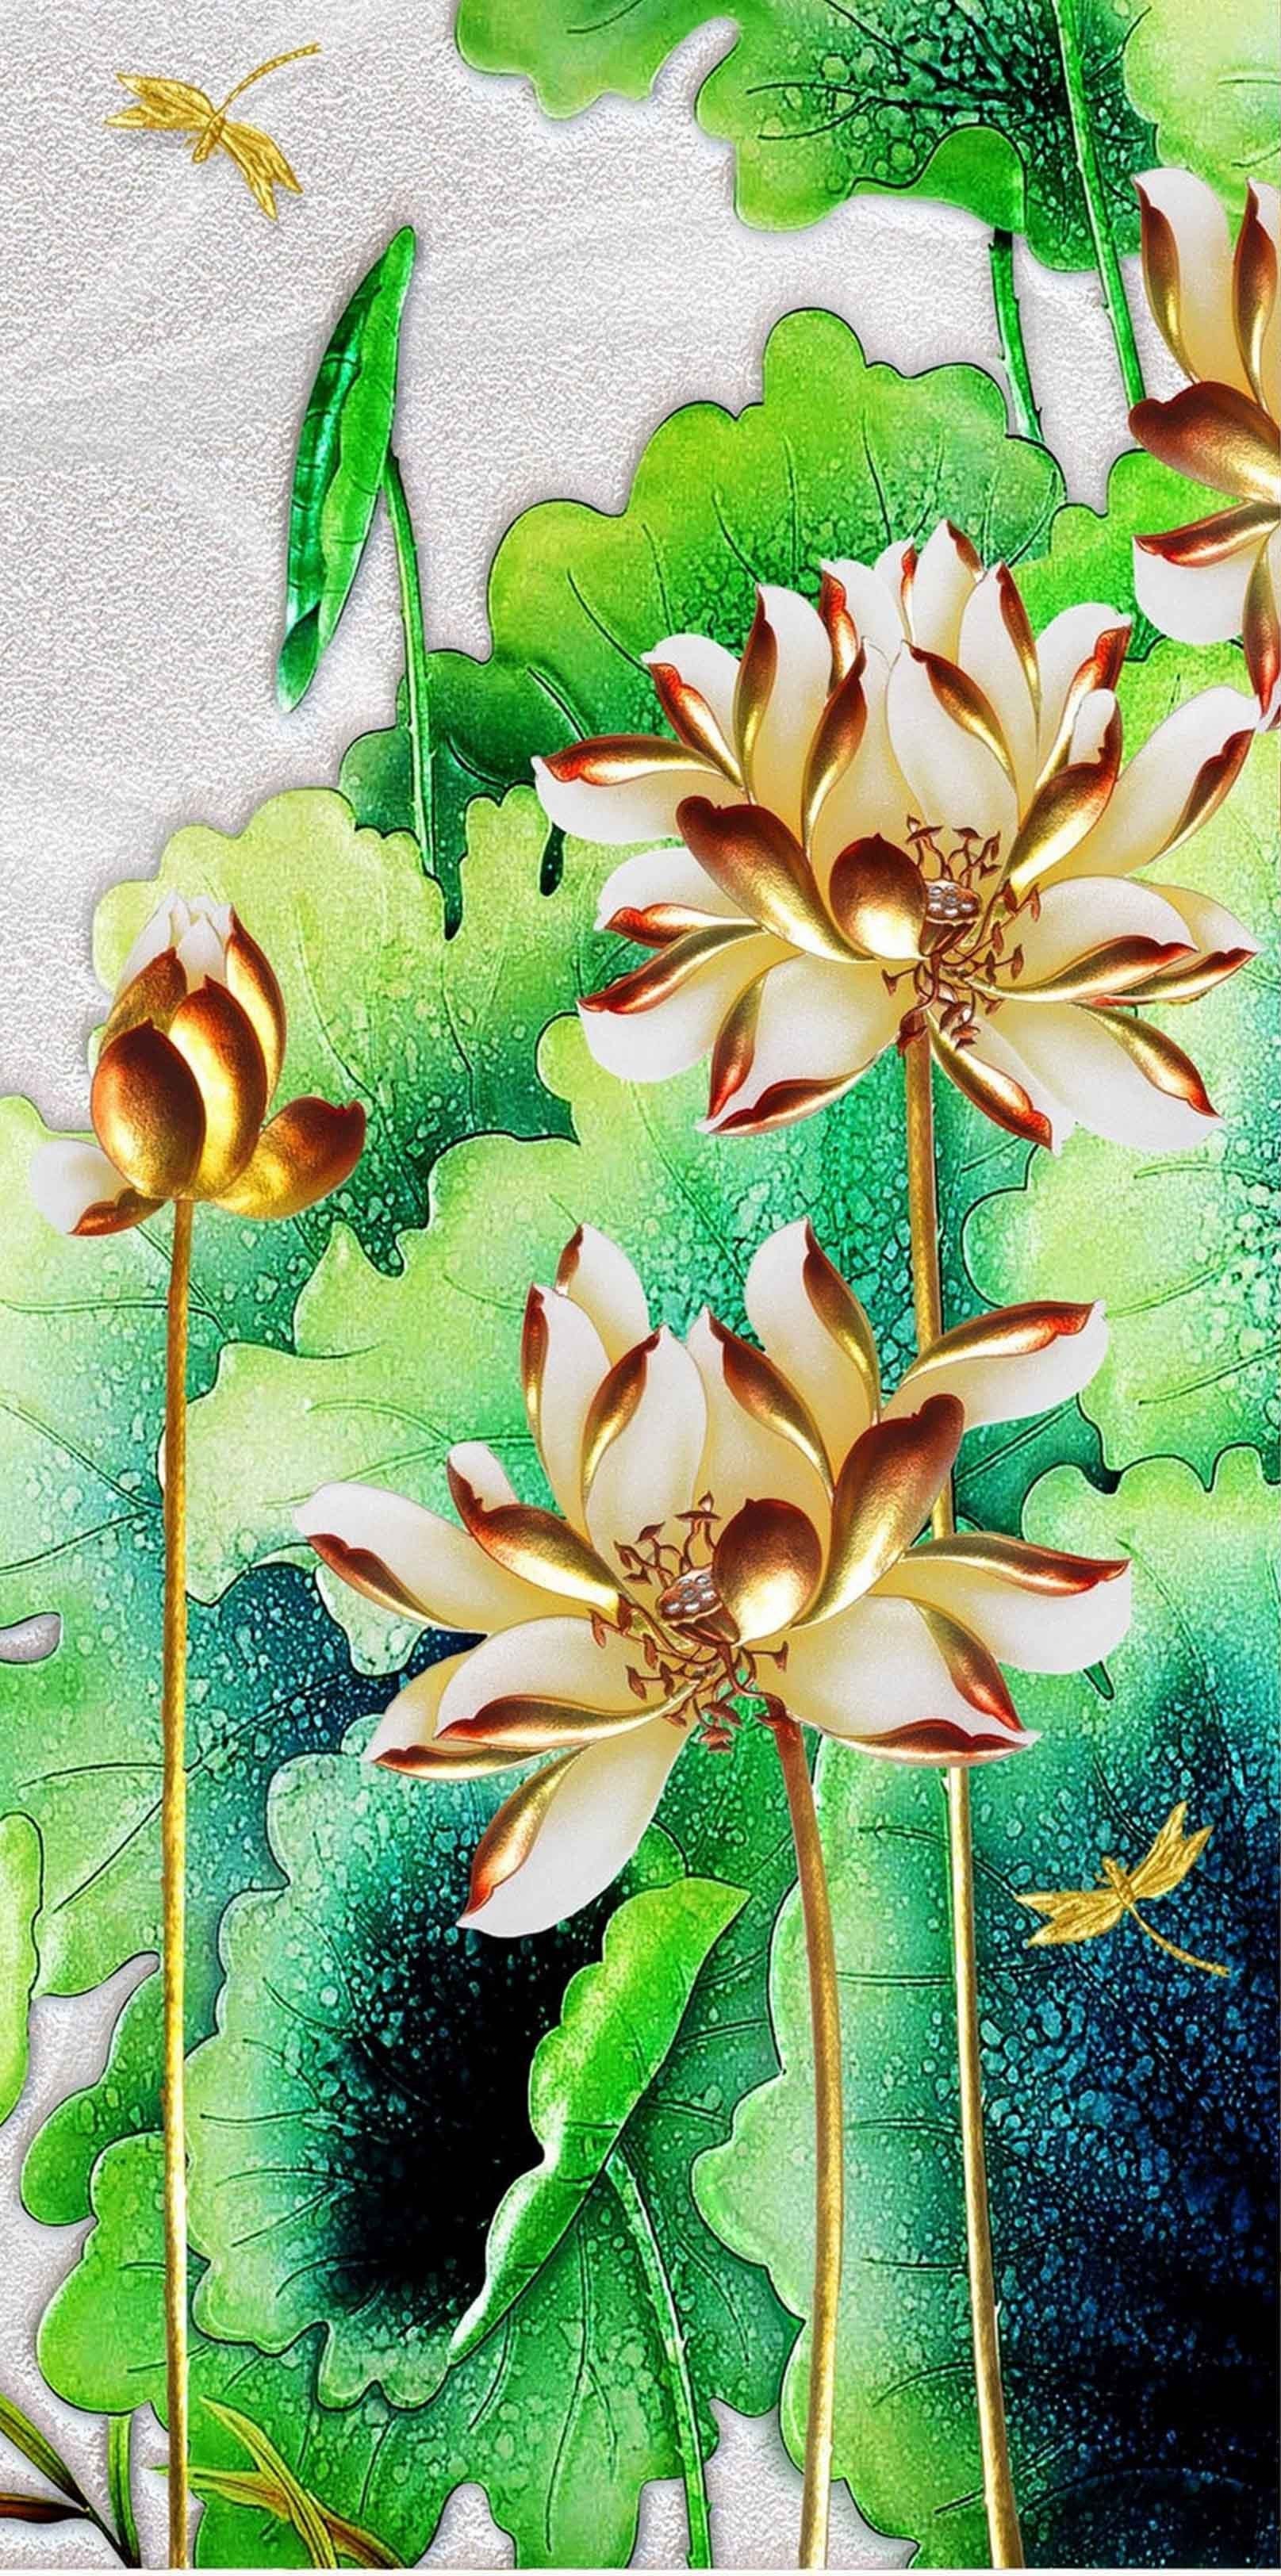 3D Lotus Flowers 1542 Stair Risers Wallpaper AJ Wallpaper 